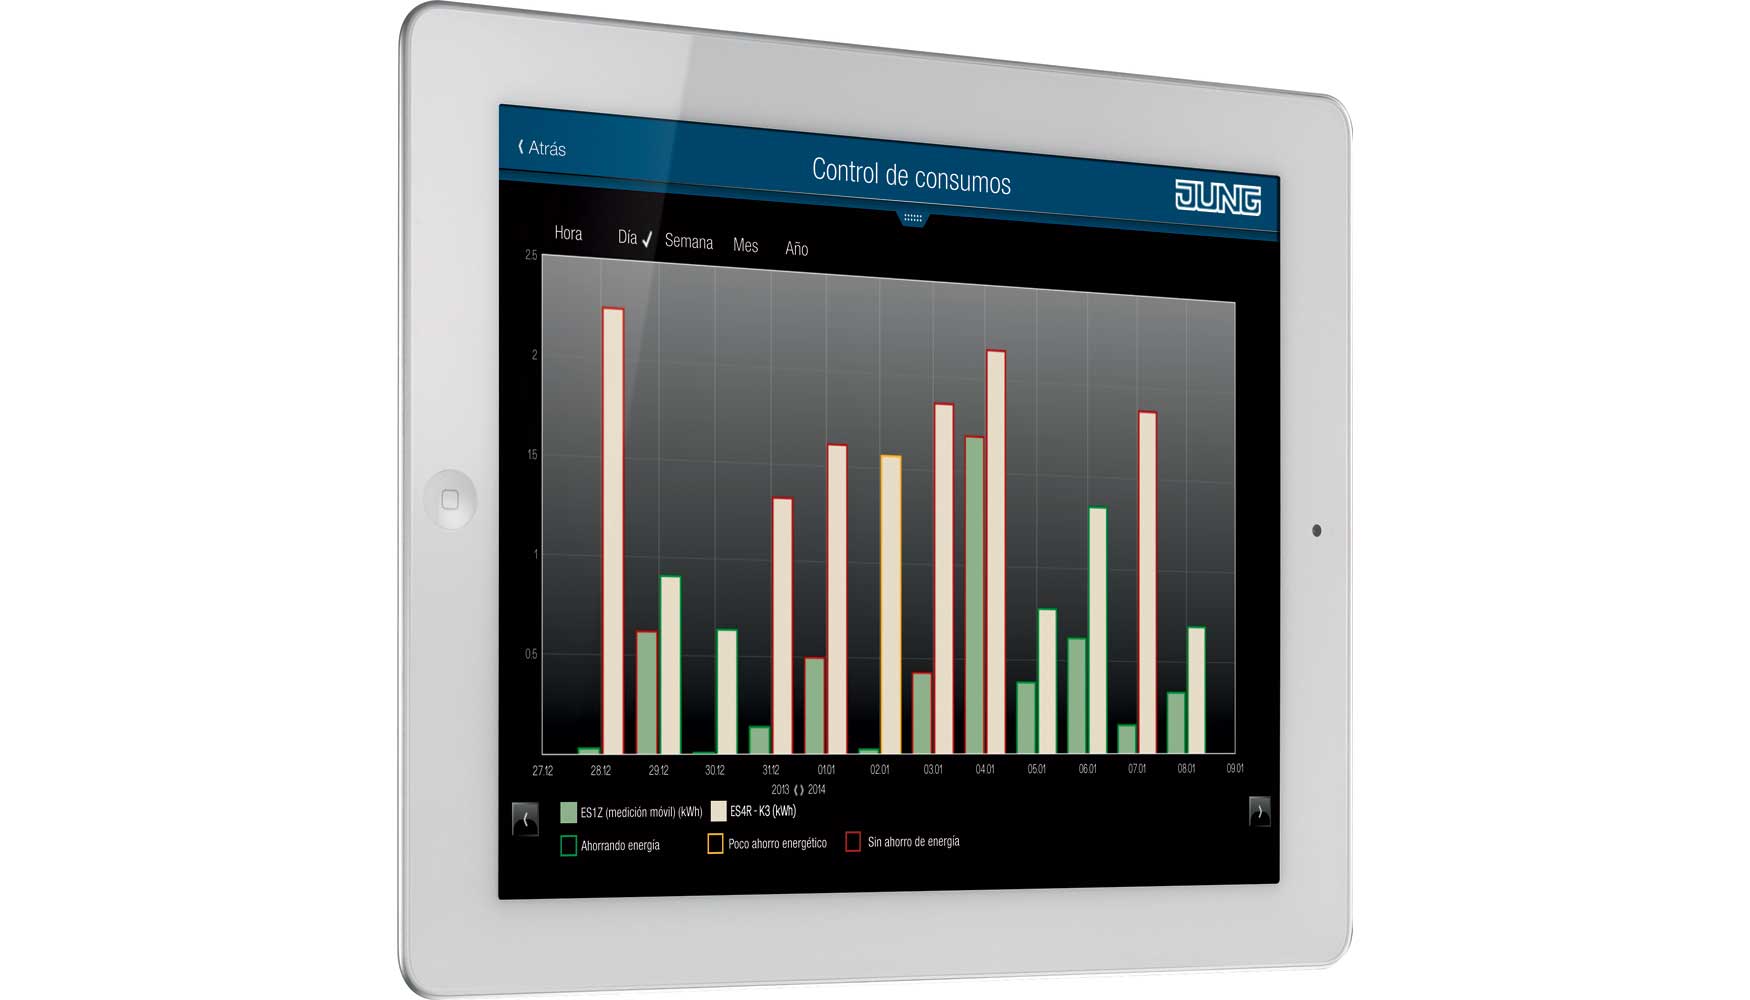 Visualizacin de eNet Home con tablet - Control consumos